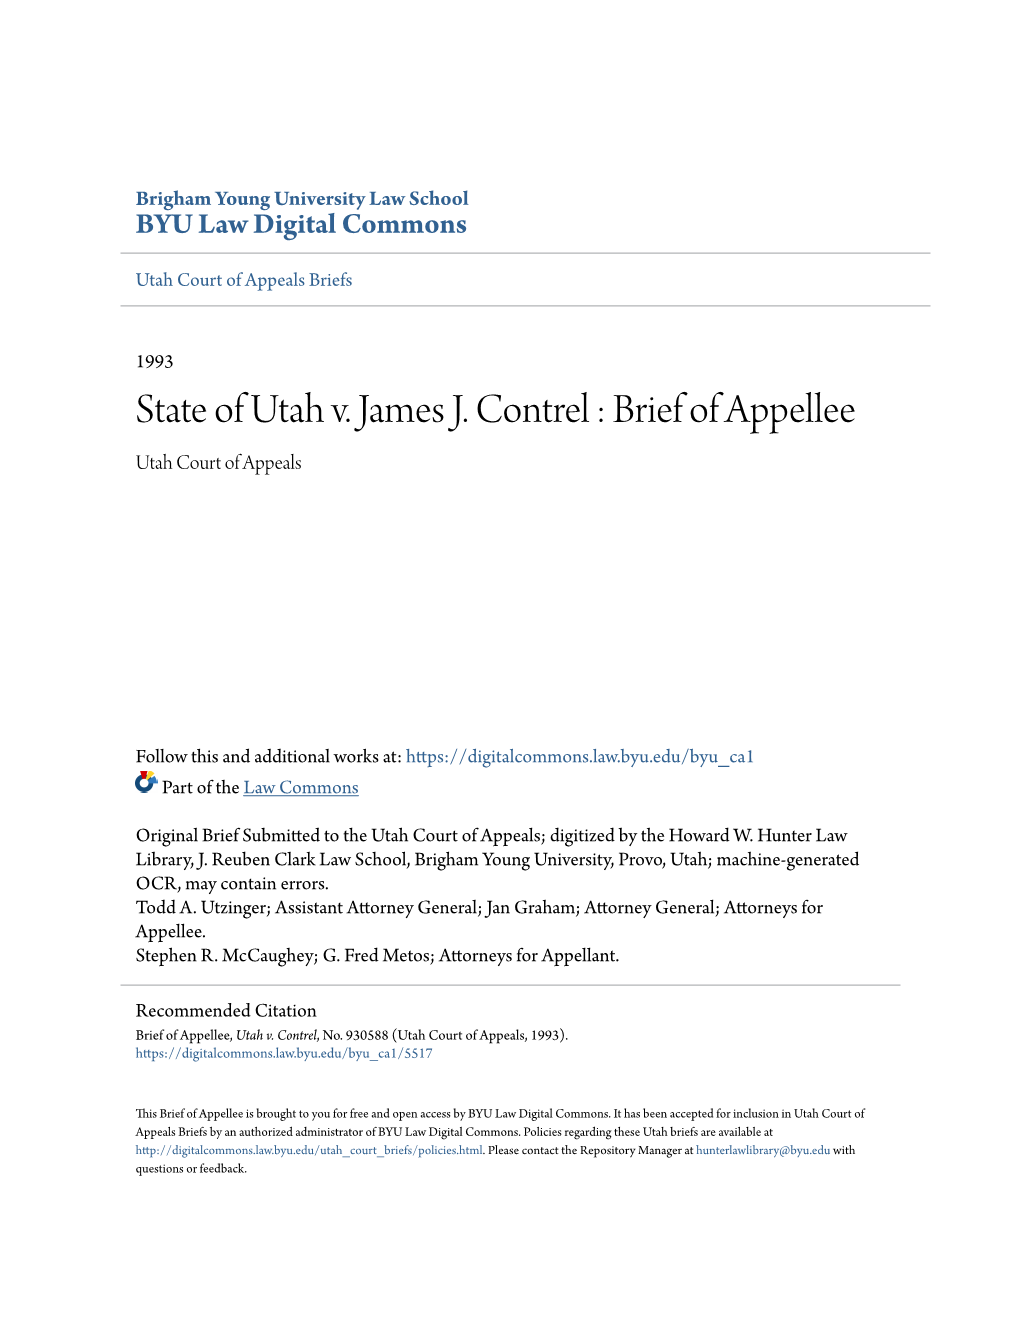 State of Utah V. James J. Contrel : Brief of Appellee Utah Court of Appeals